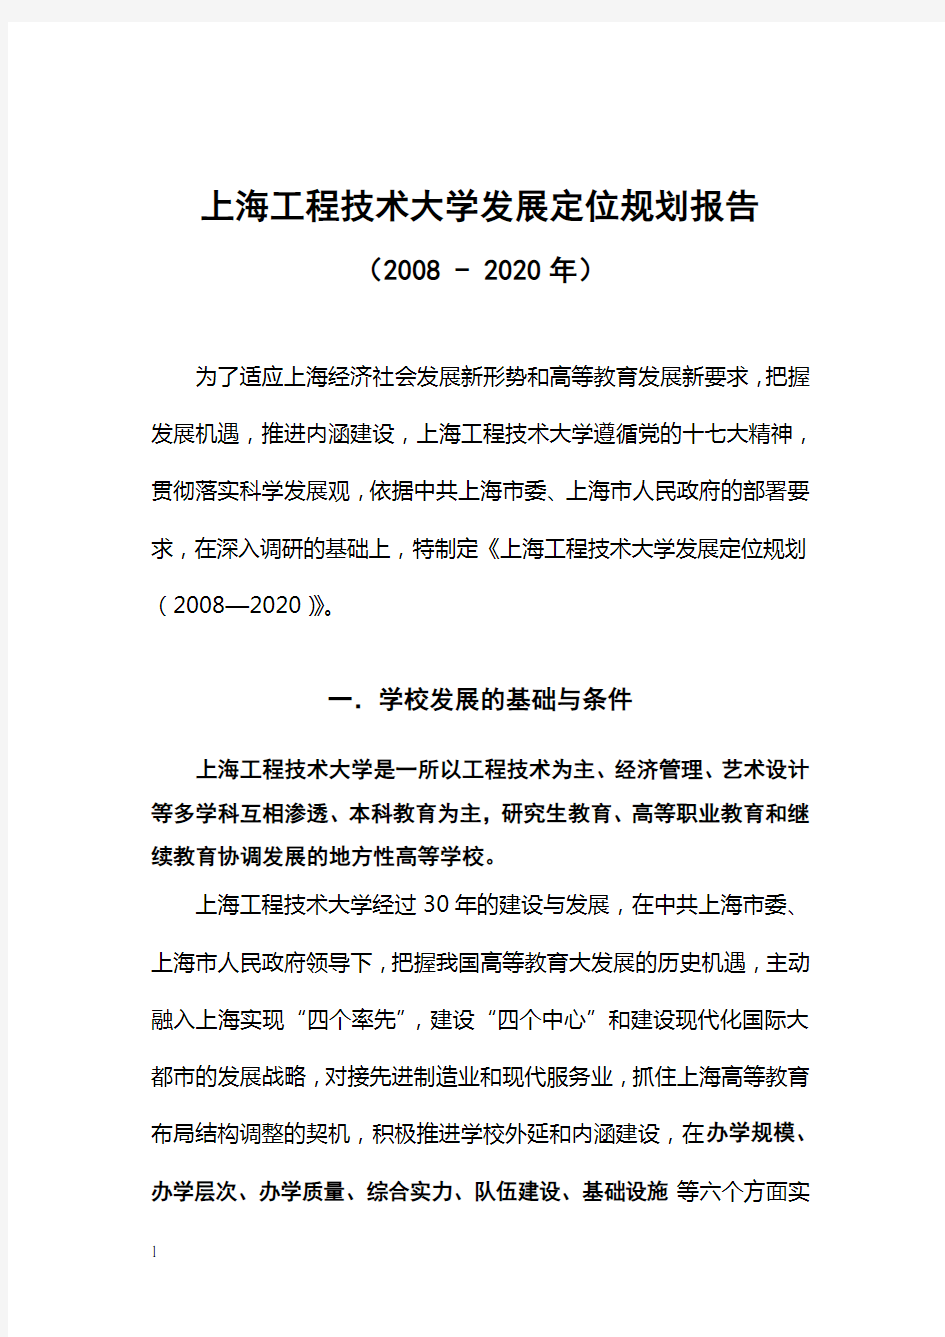 上海工程技术大学发展定位规划报告